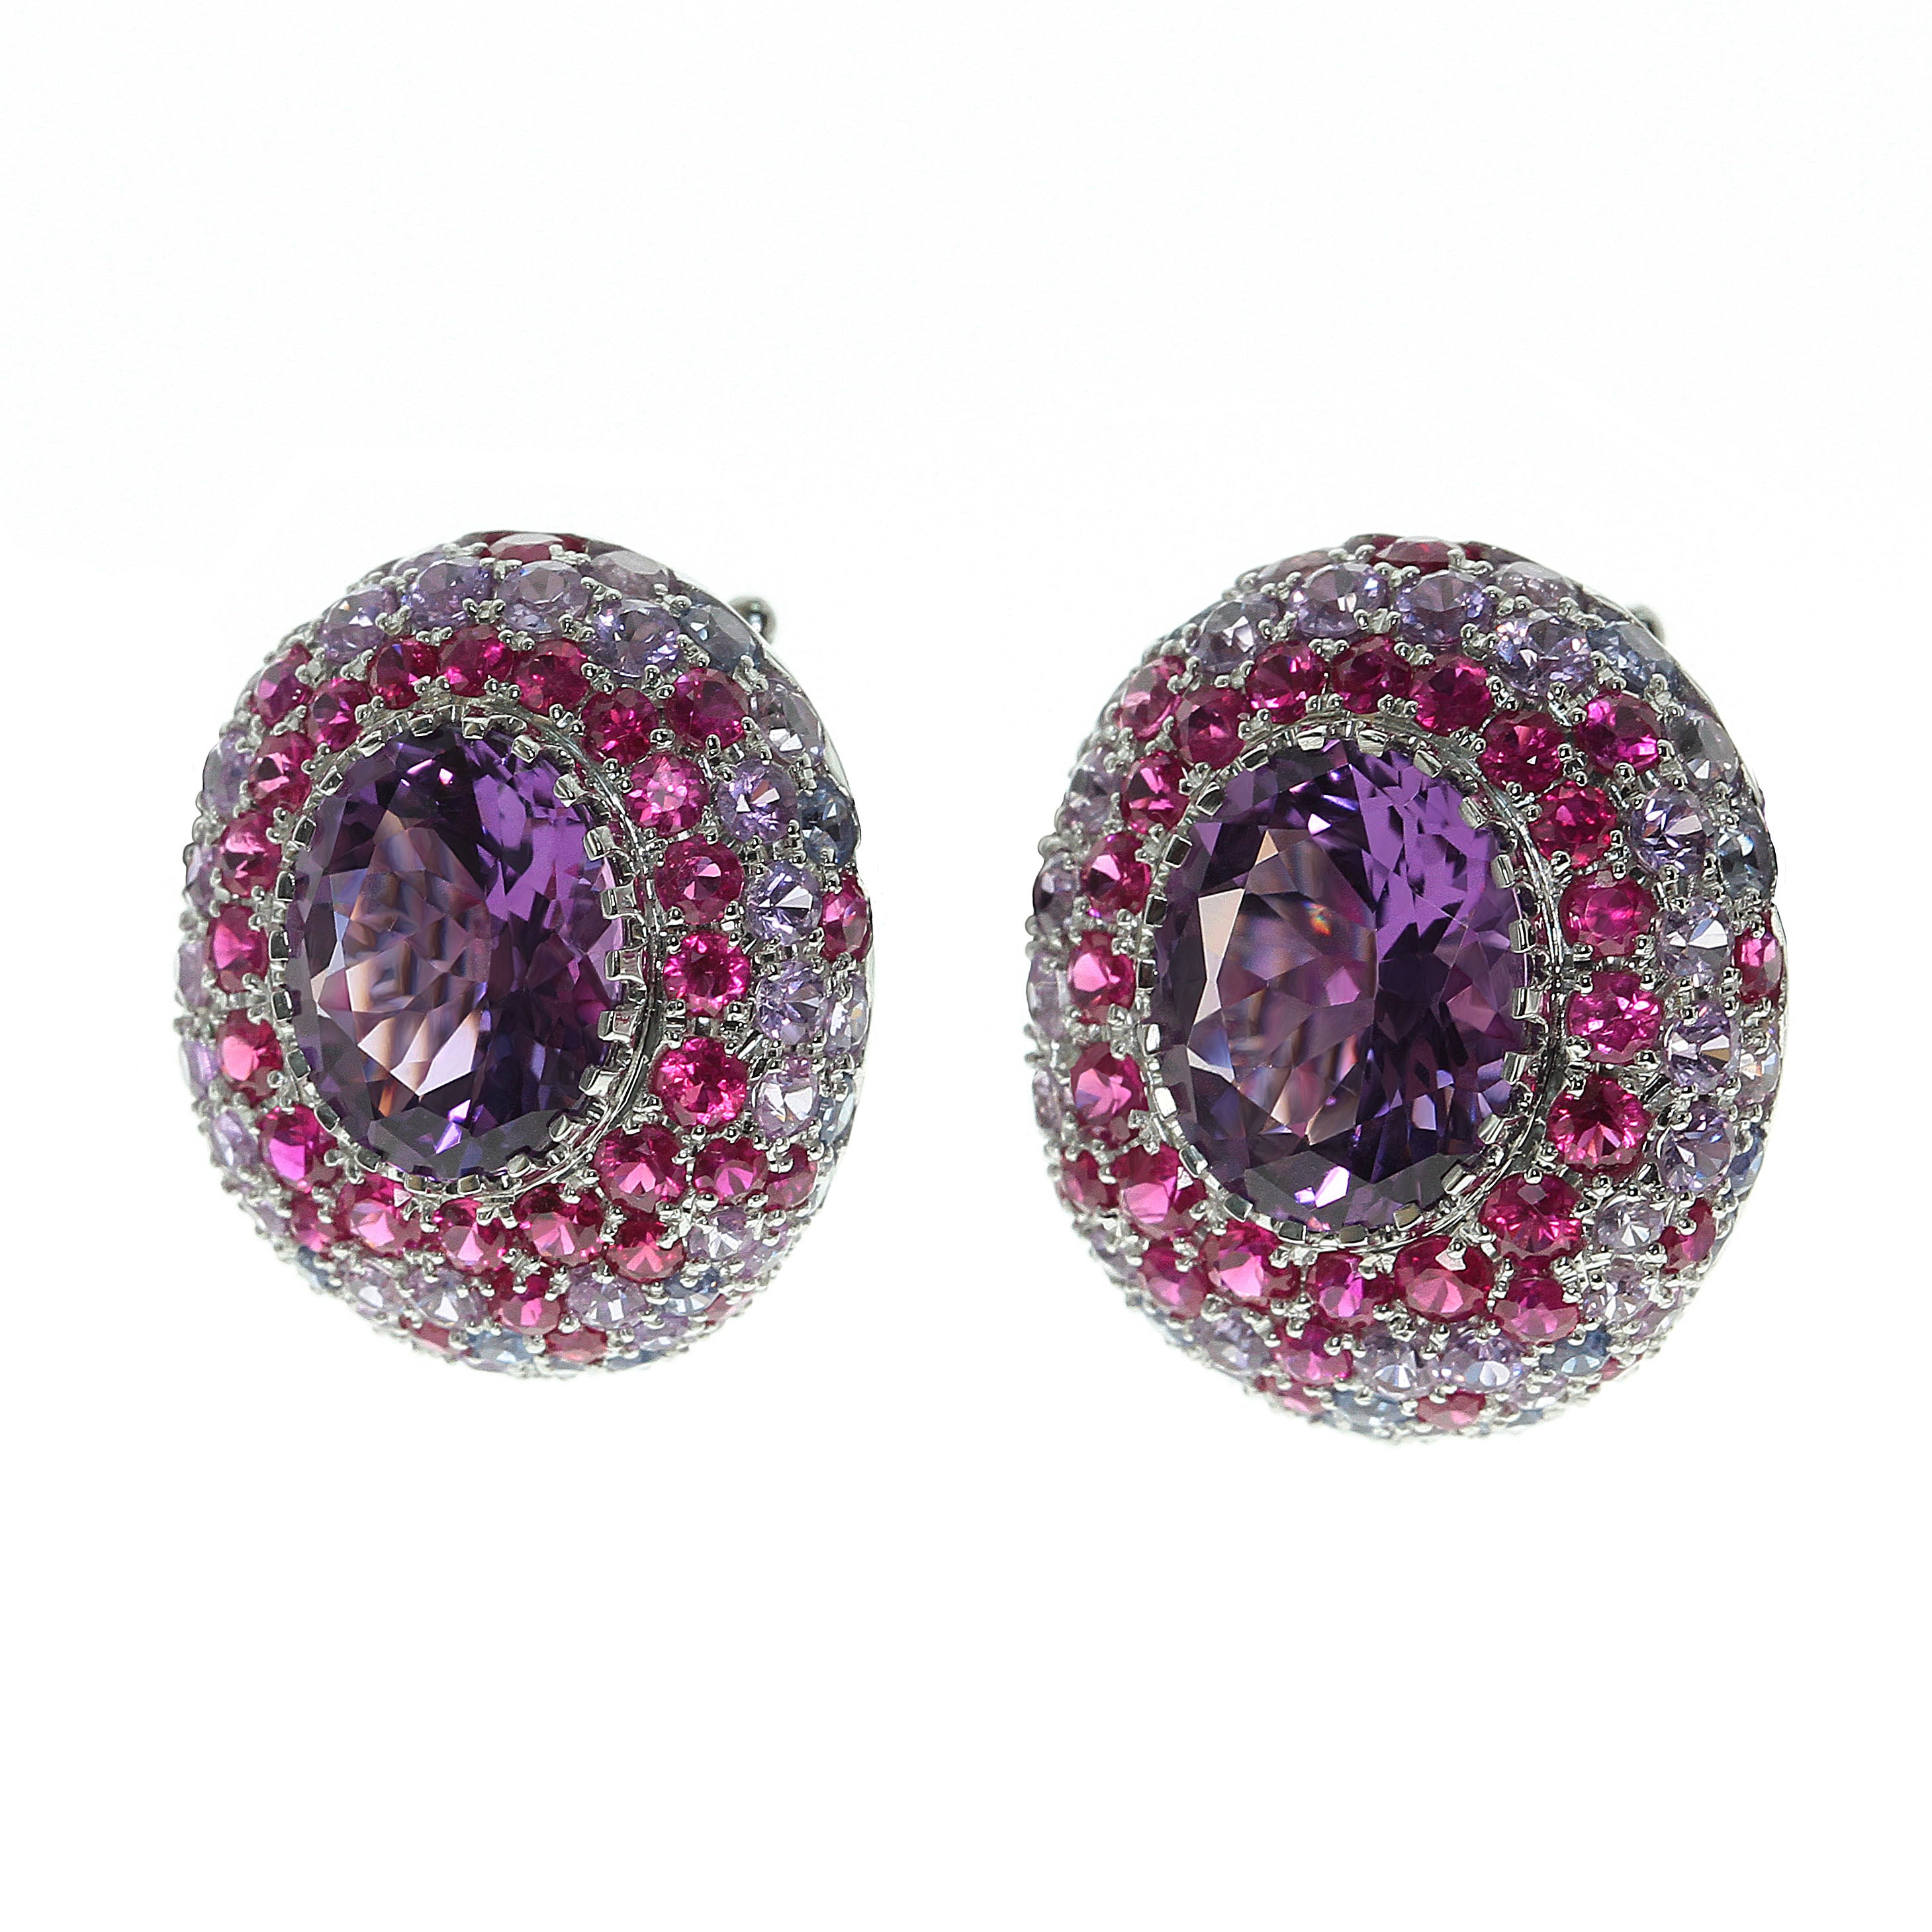 E 0040-2, 18K White Gold, Amethyst, Sapphires, Ruby Earrings